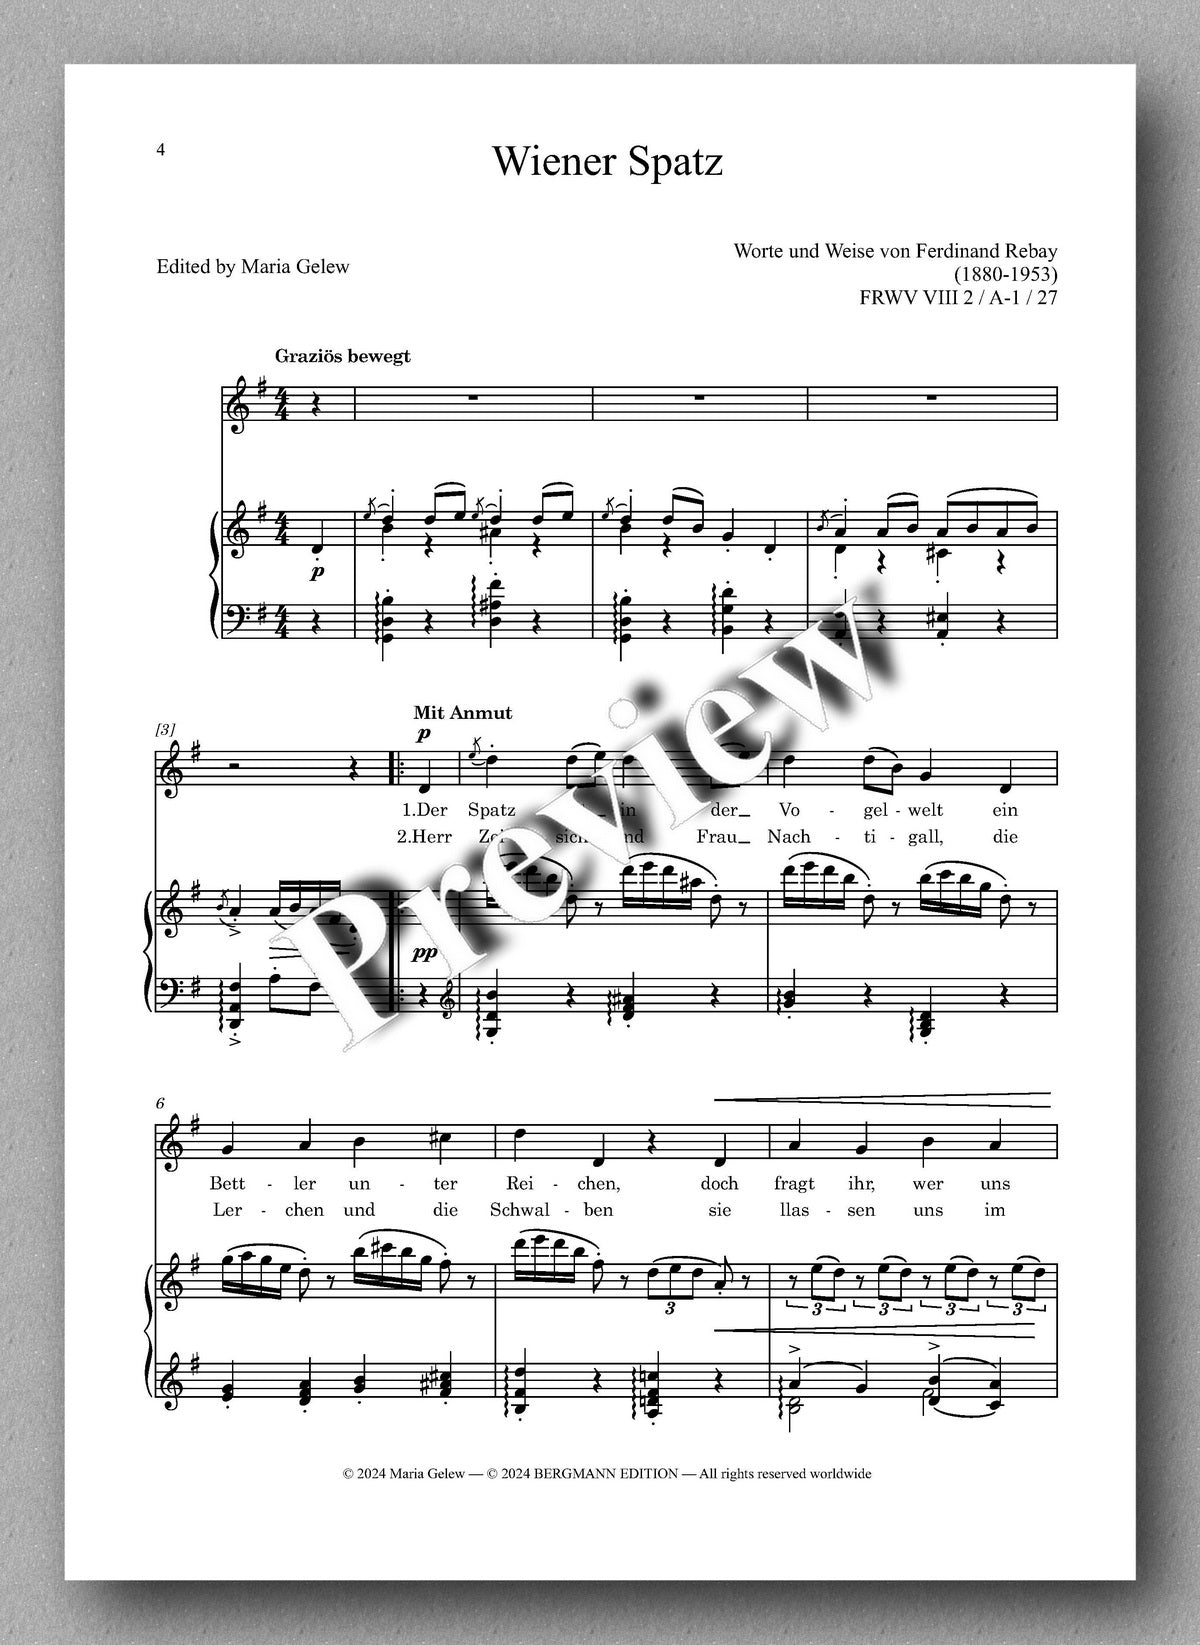 Rebay, Lieder No. 17, Lieder nach eigenen Texten - preview of the music score 1